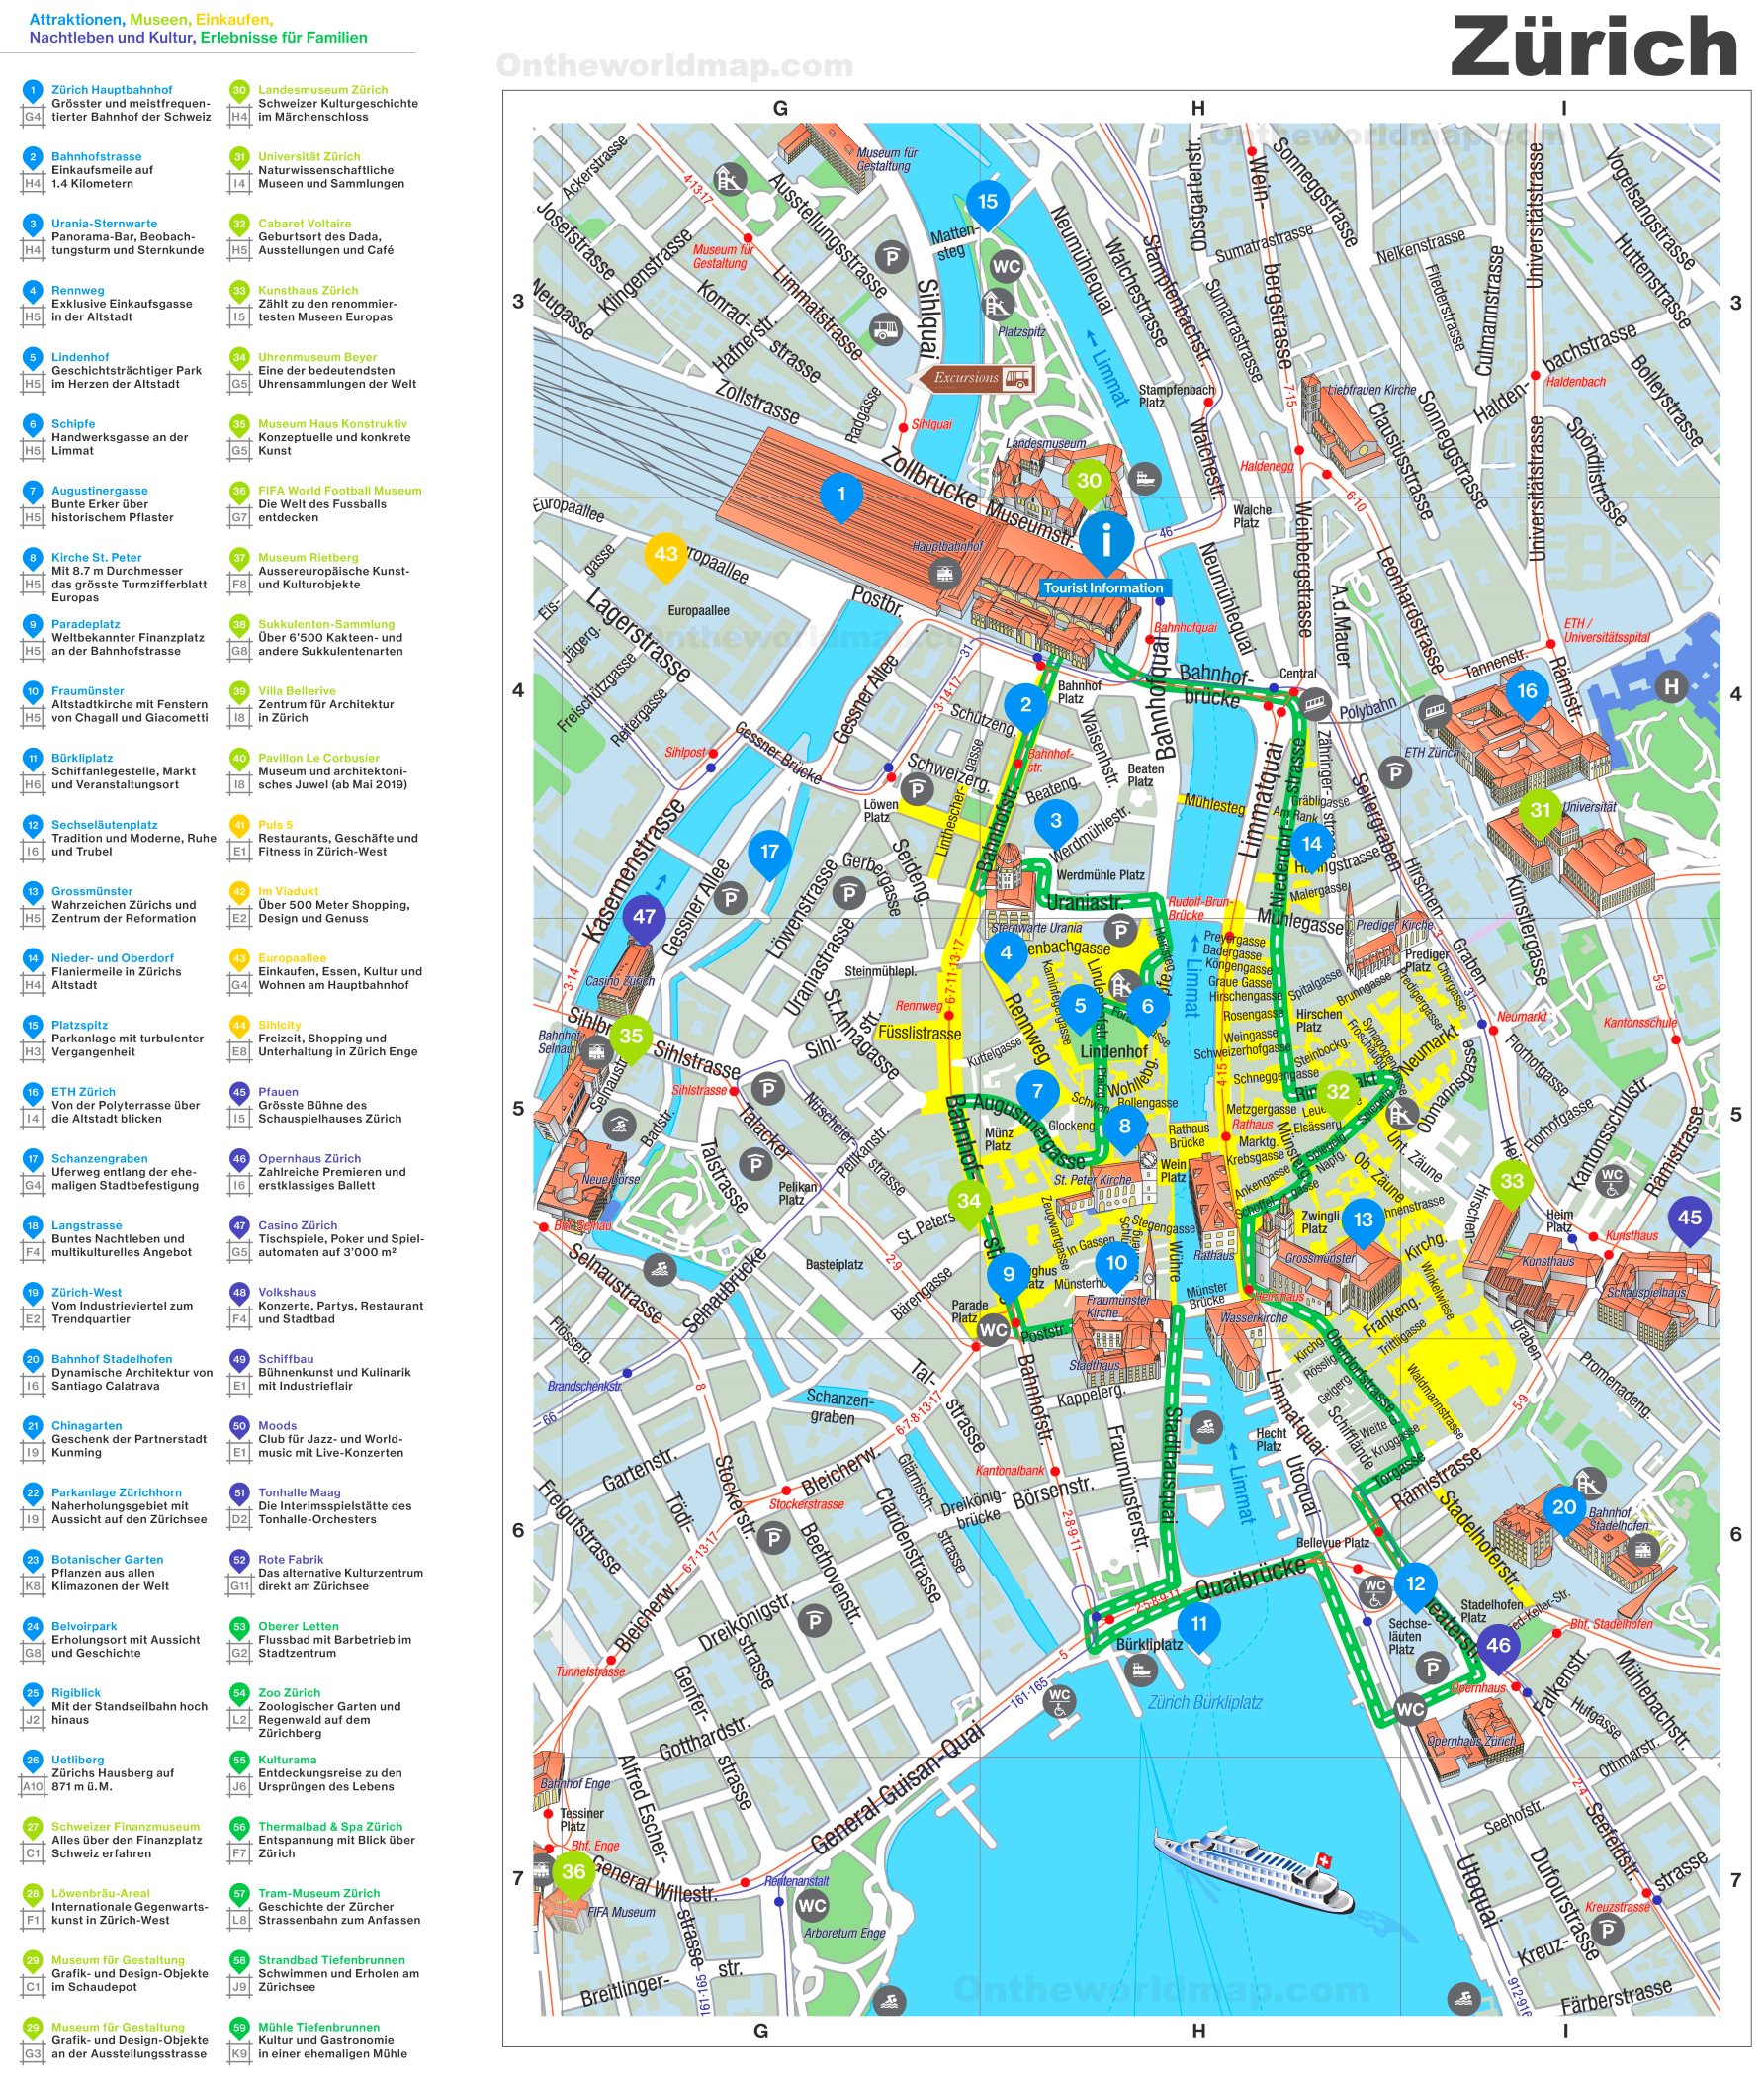 zurich city tourist map